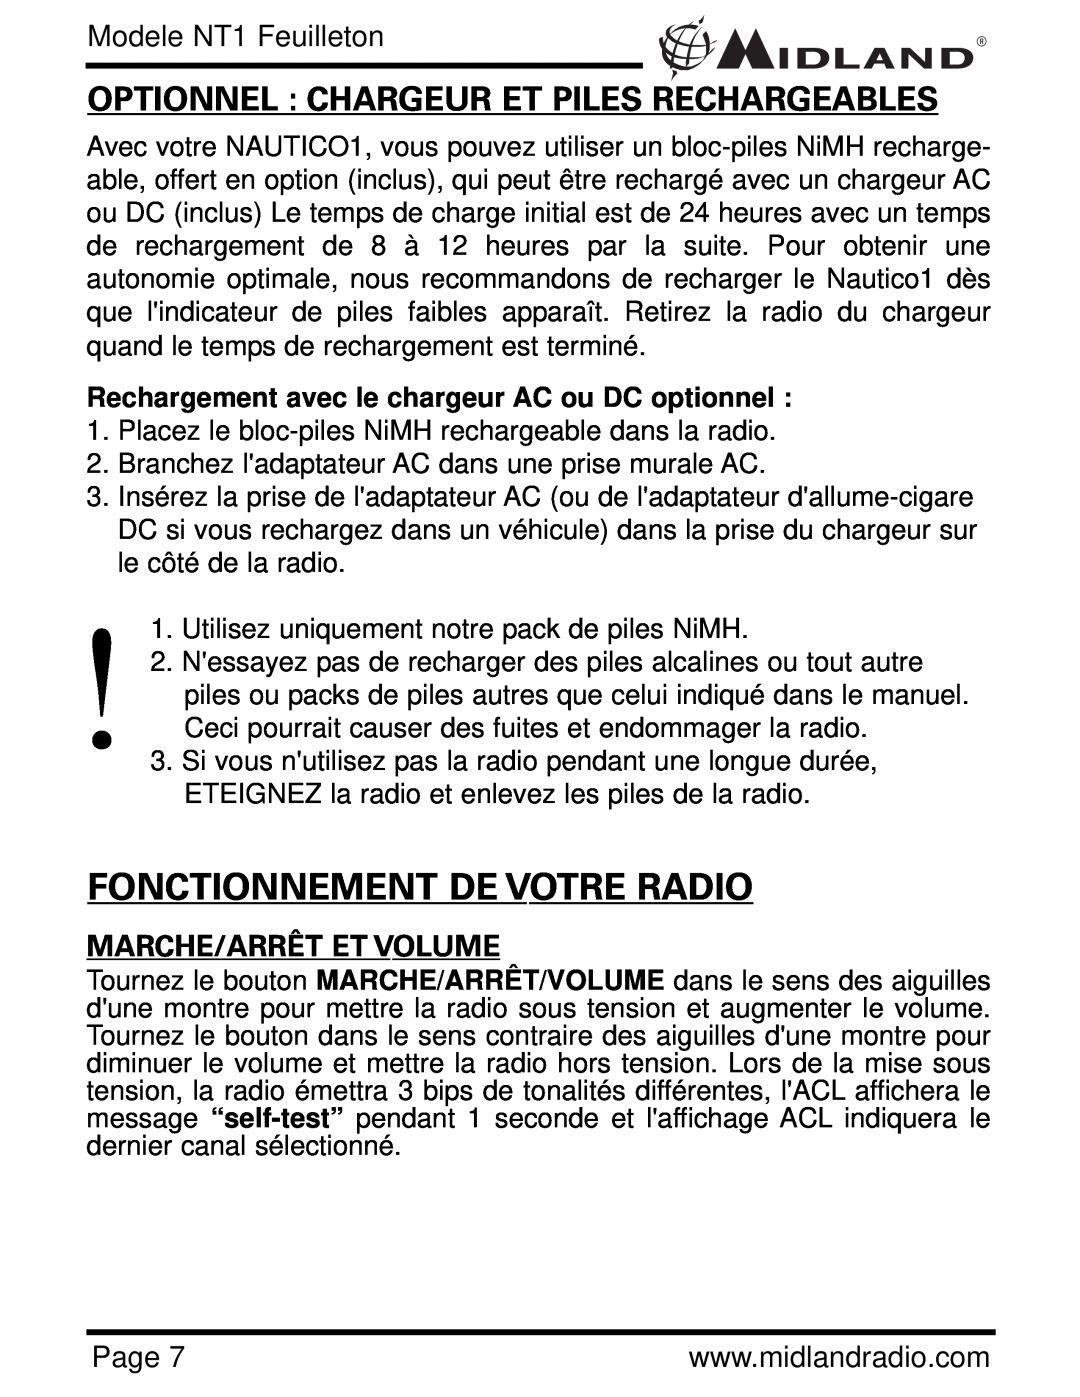 Midland Radio NT1 SERIES Fonctionnement De Votre Radio, Marche/Arrêt Et Volume, Optionnel Chargeur Et Piles Rechargeables 